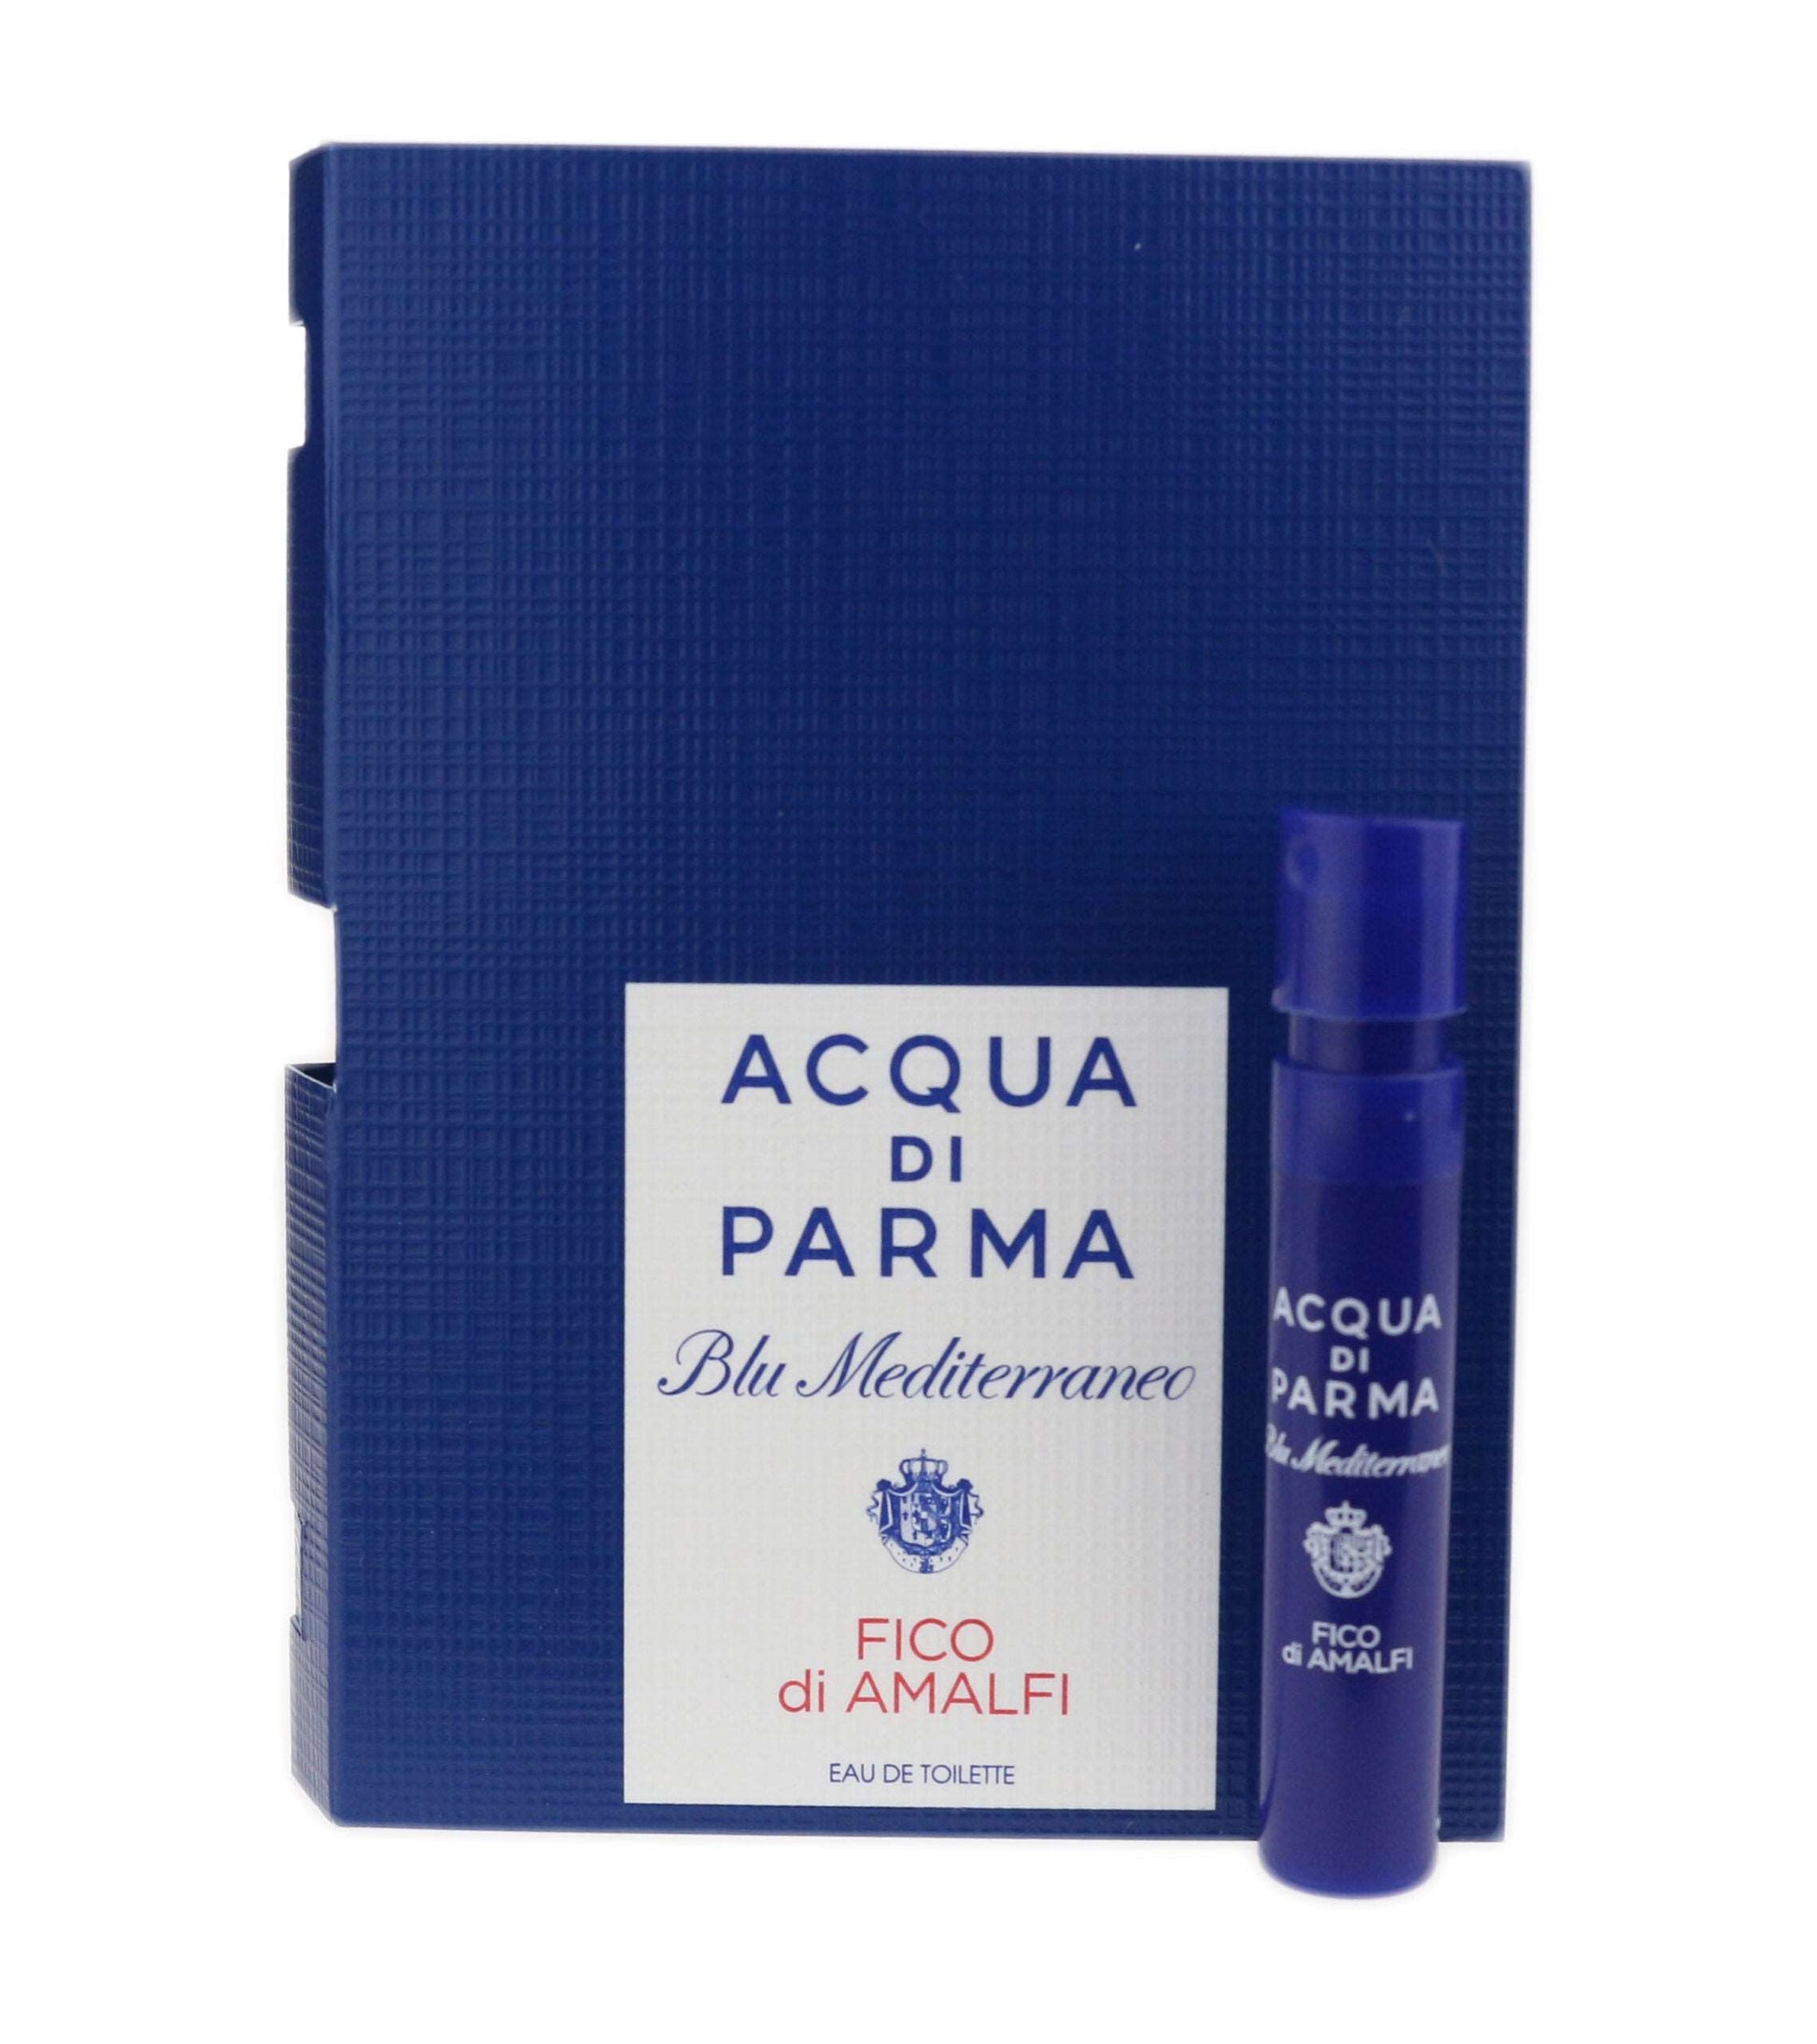 Acqua Di Parma Fico Di Amalfi 1.2 ml-0.04 fl.oz. échantillons de parfum officiels